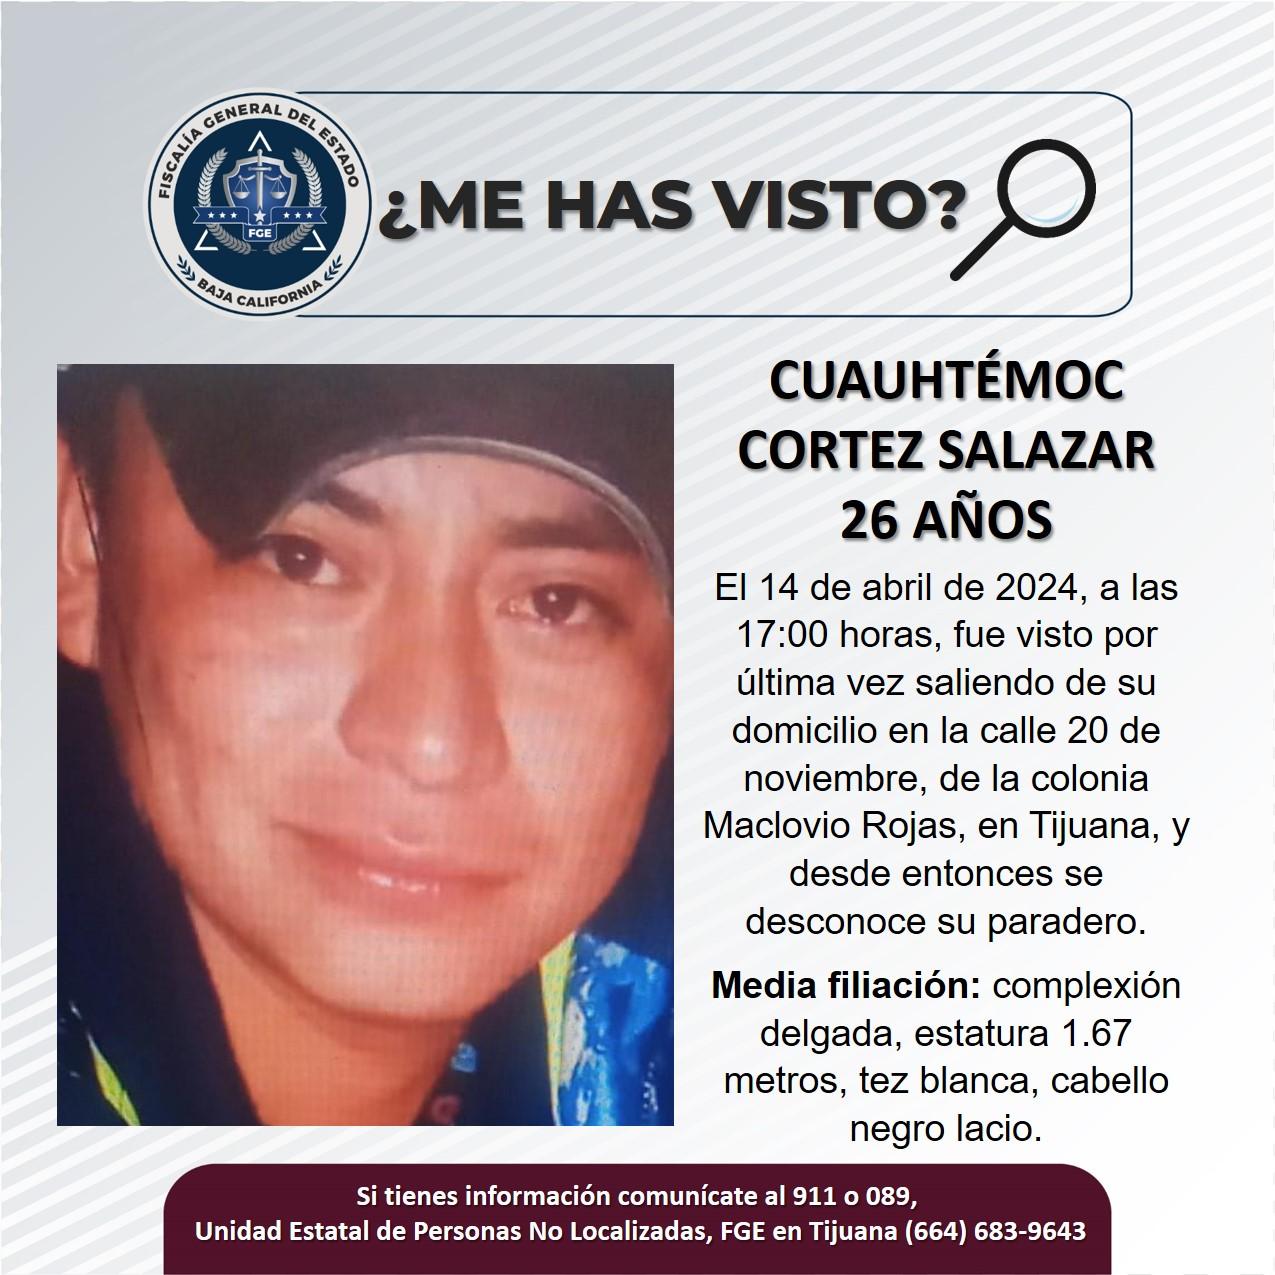 Servicio social: Se busca a Cuauhtémoc Cortez Salazar de 26 años de edad